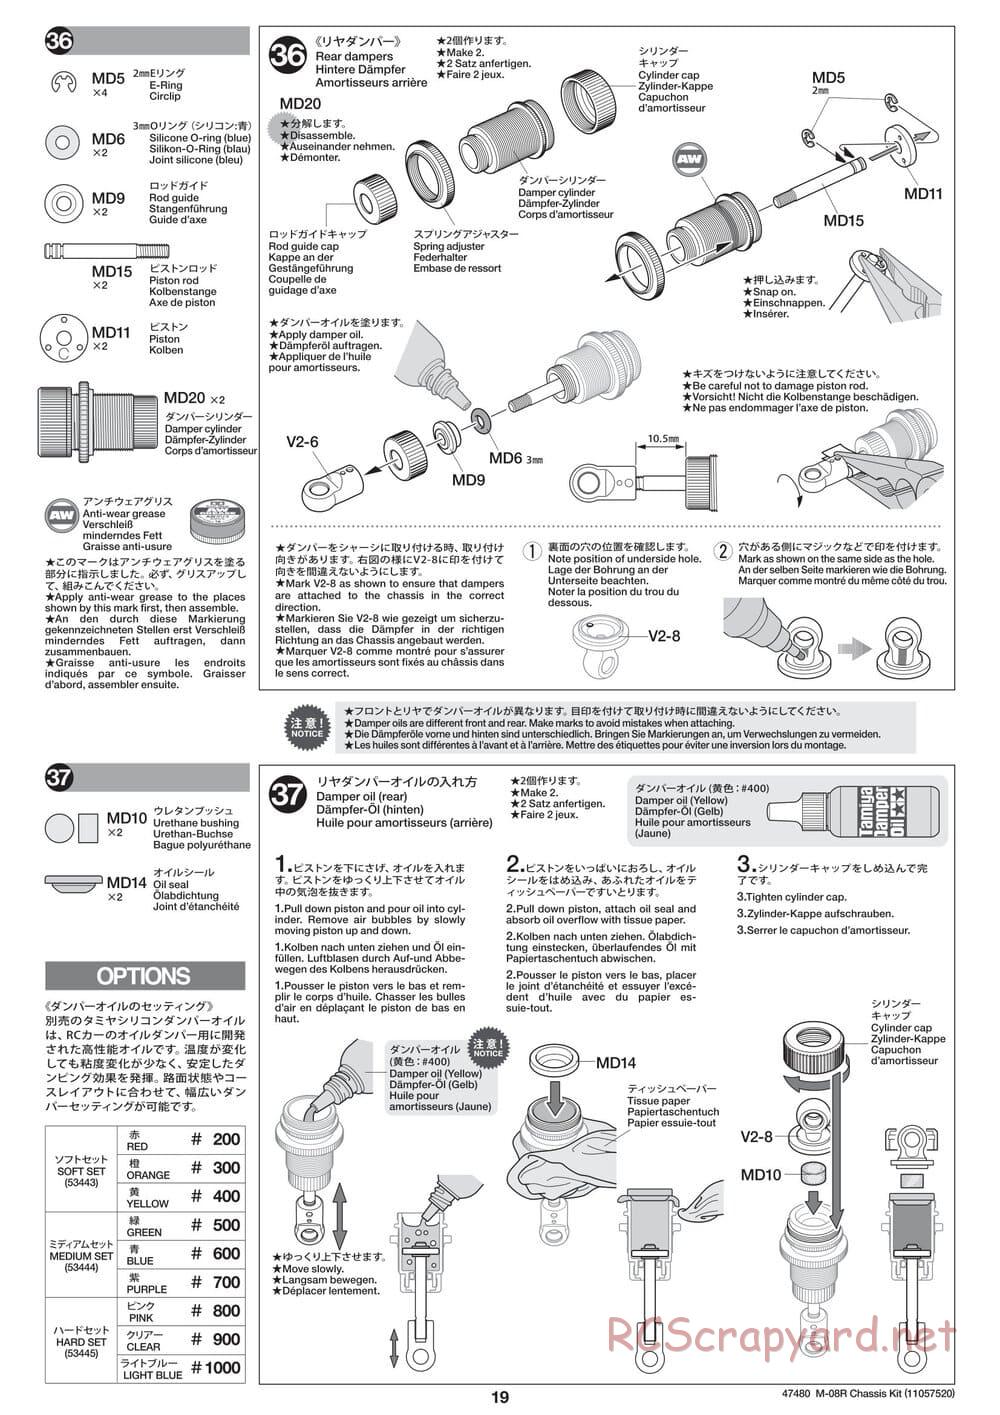 Tamiya - M-08R Chassis - Manual - Page 19